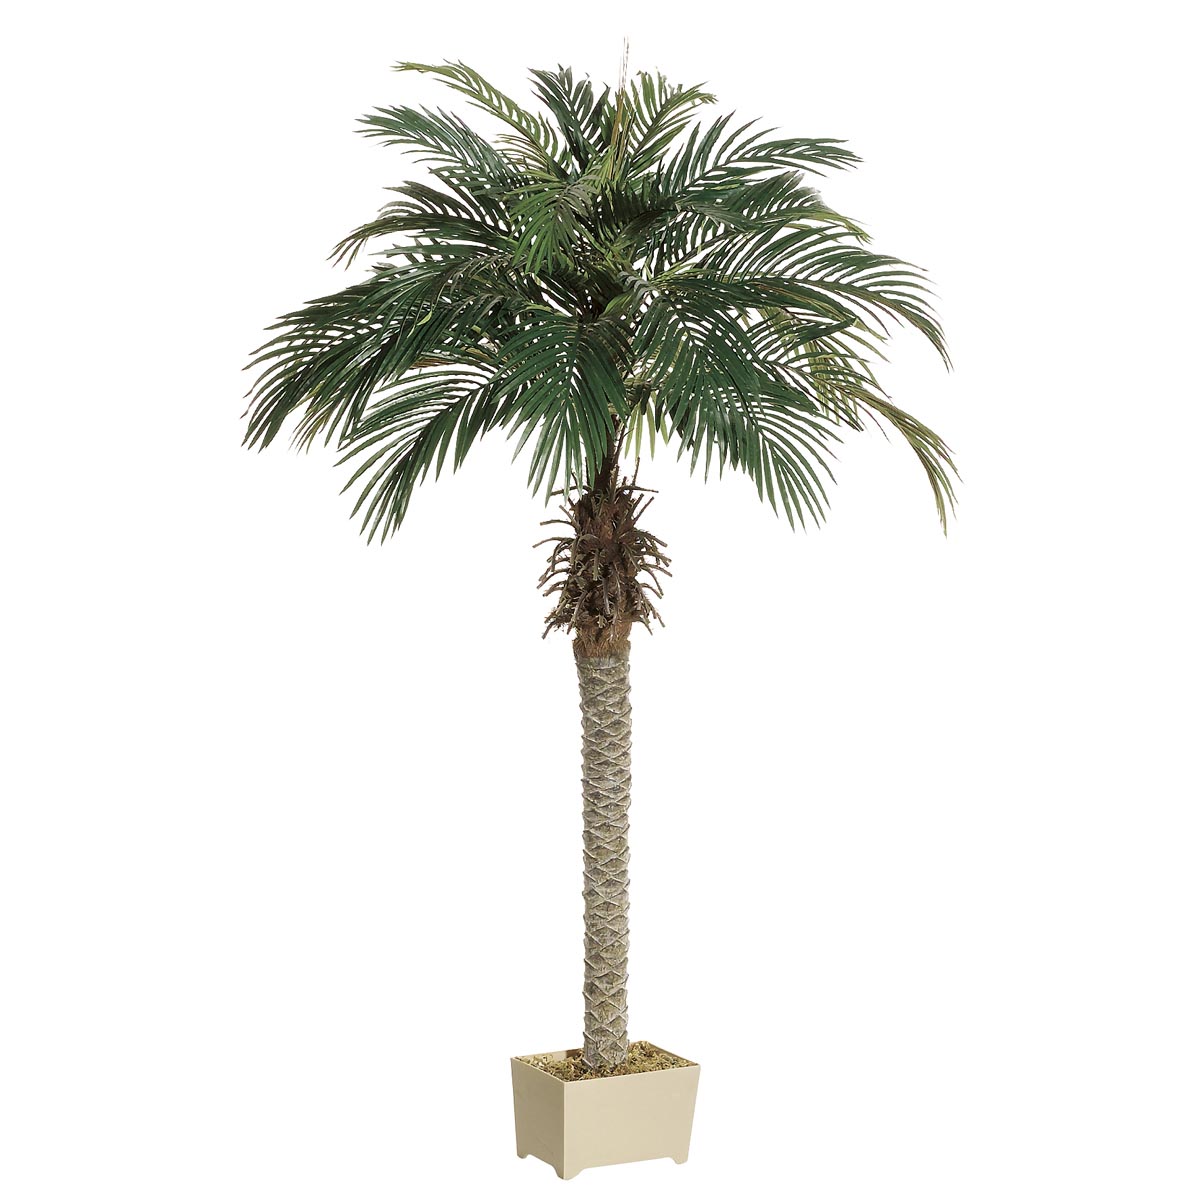 5.5 Foot Phoenix Palm Tree In Decorative Pot